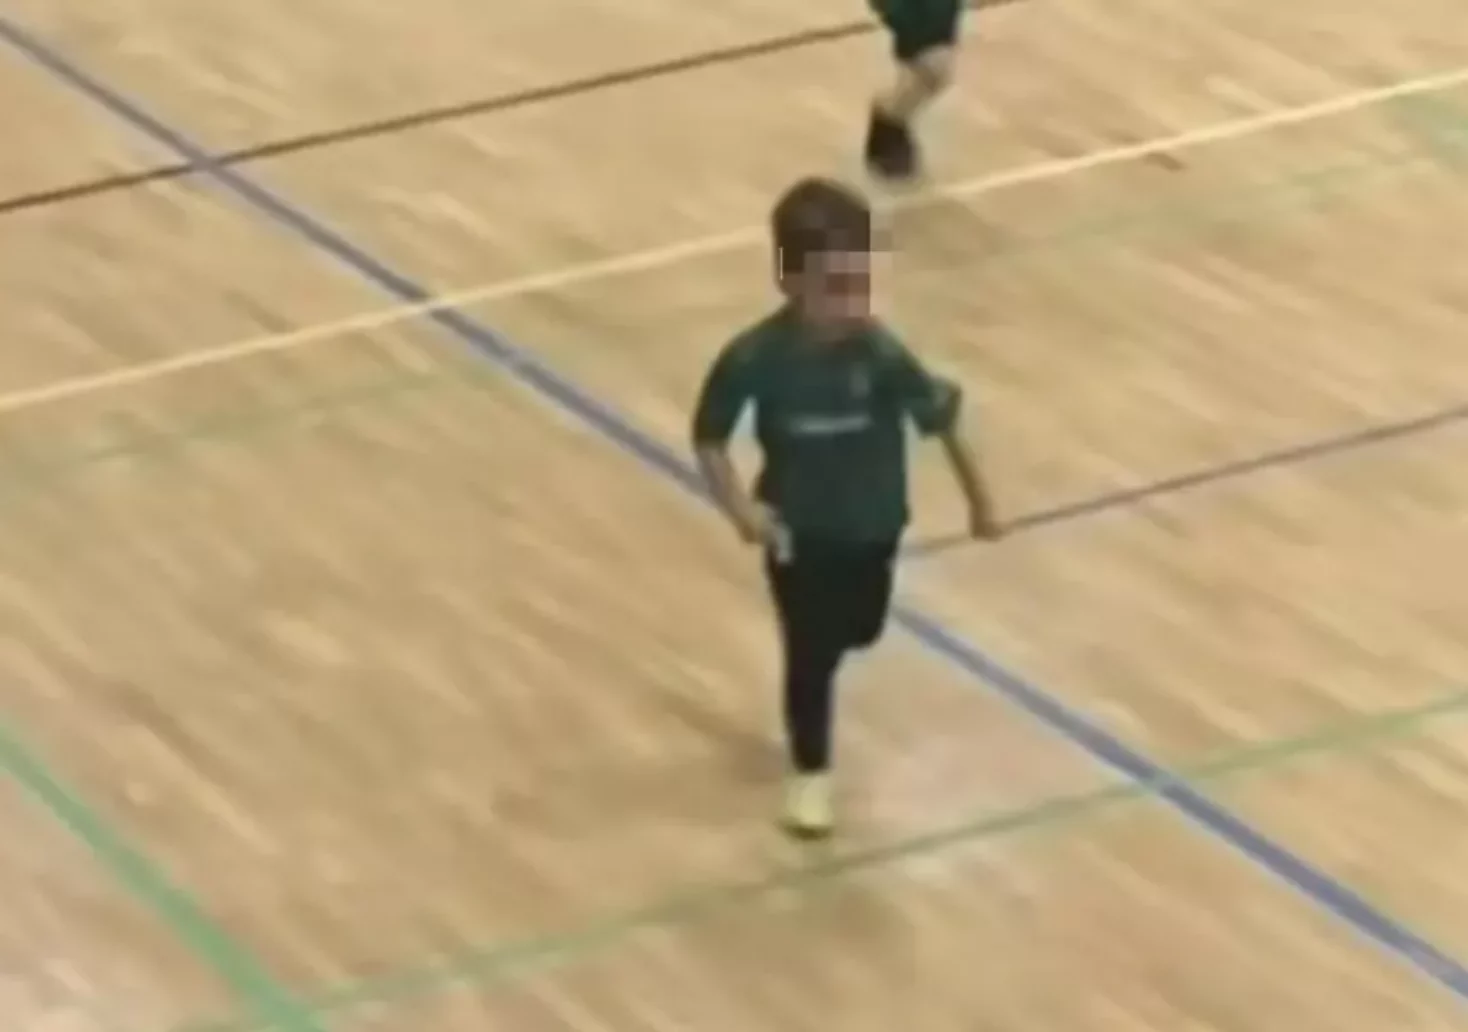 Bild auf 5min.at zeigt ein Kind beim Fußballspielen.